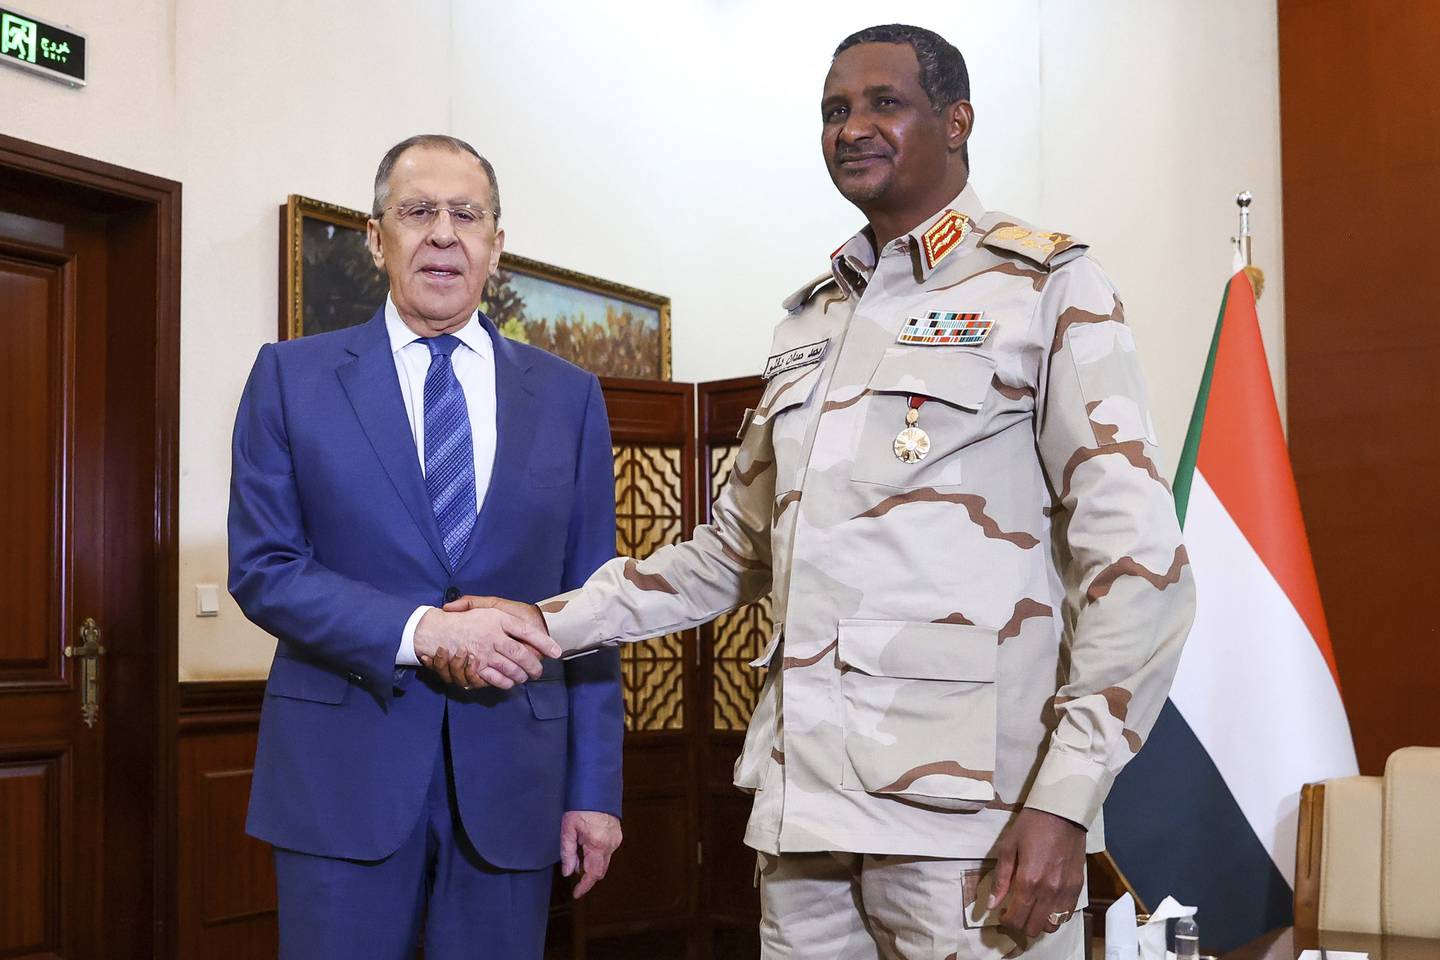 Der russische Außenminister Sergej Lawrow (links) und der stellvertretende Vorsitzende des Übergangsrats für Souveränität, General Mohamed Dagalo, am 9. Februar in Khartum, Sudan. AP